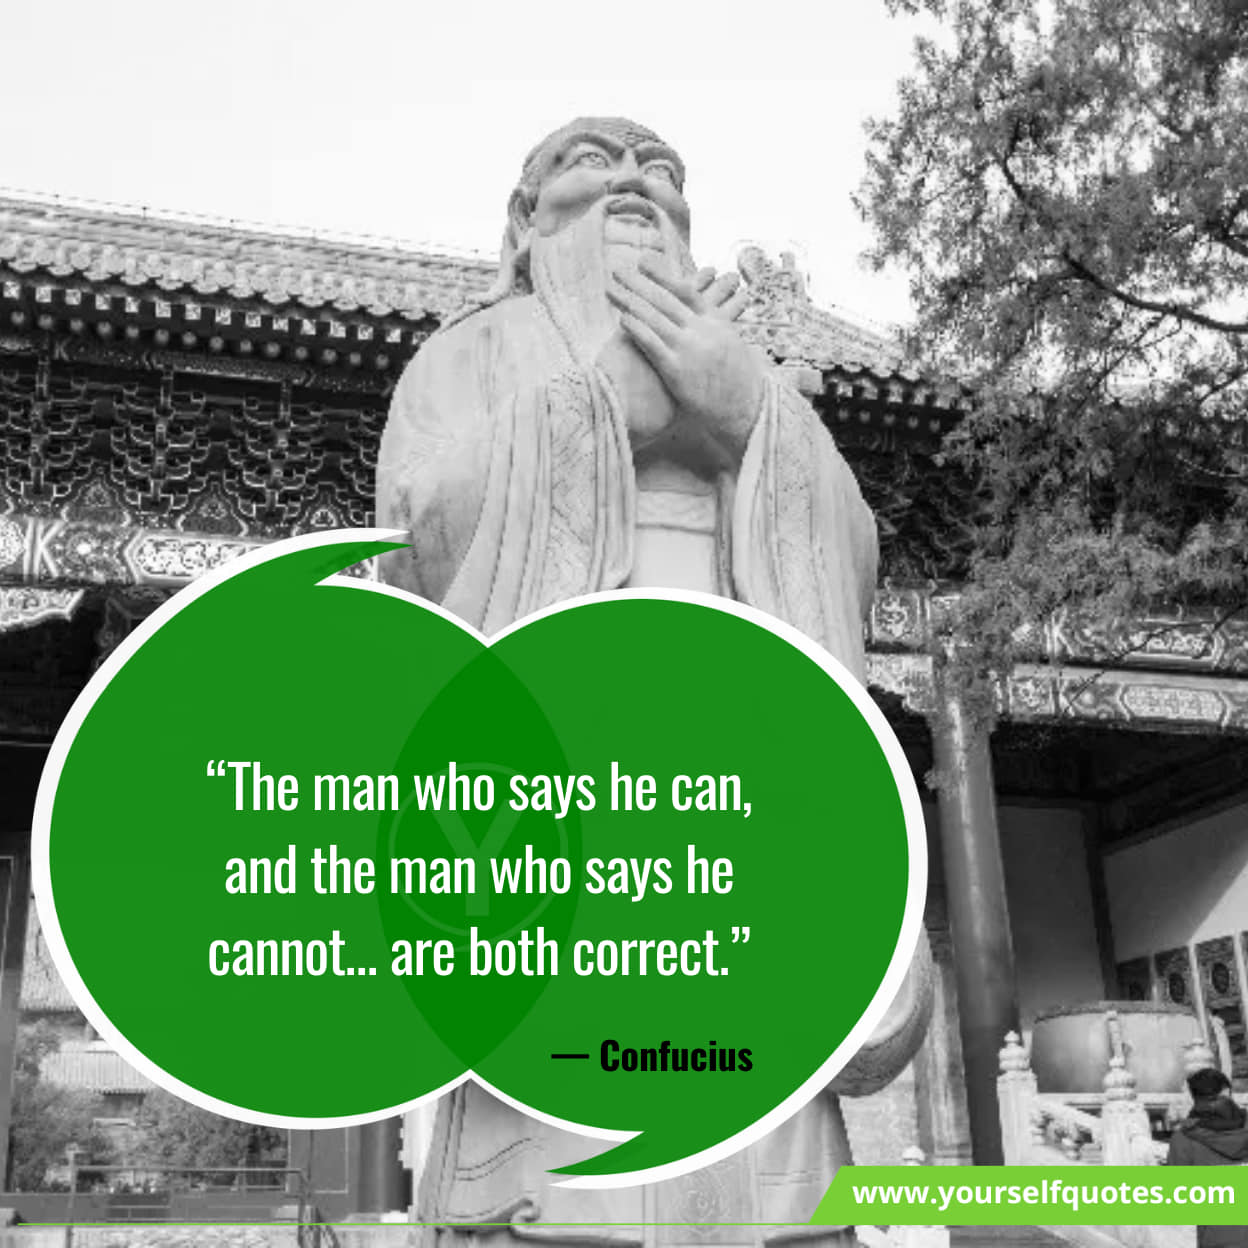 Inspiring Quotes From Confucius Quotes